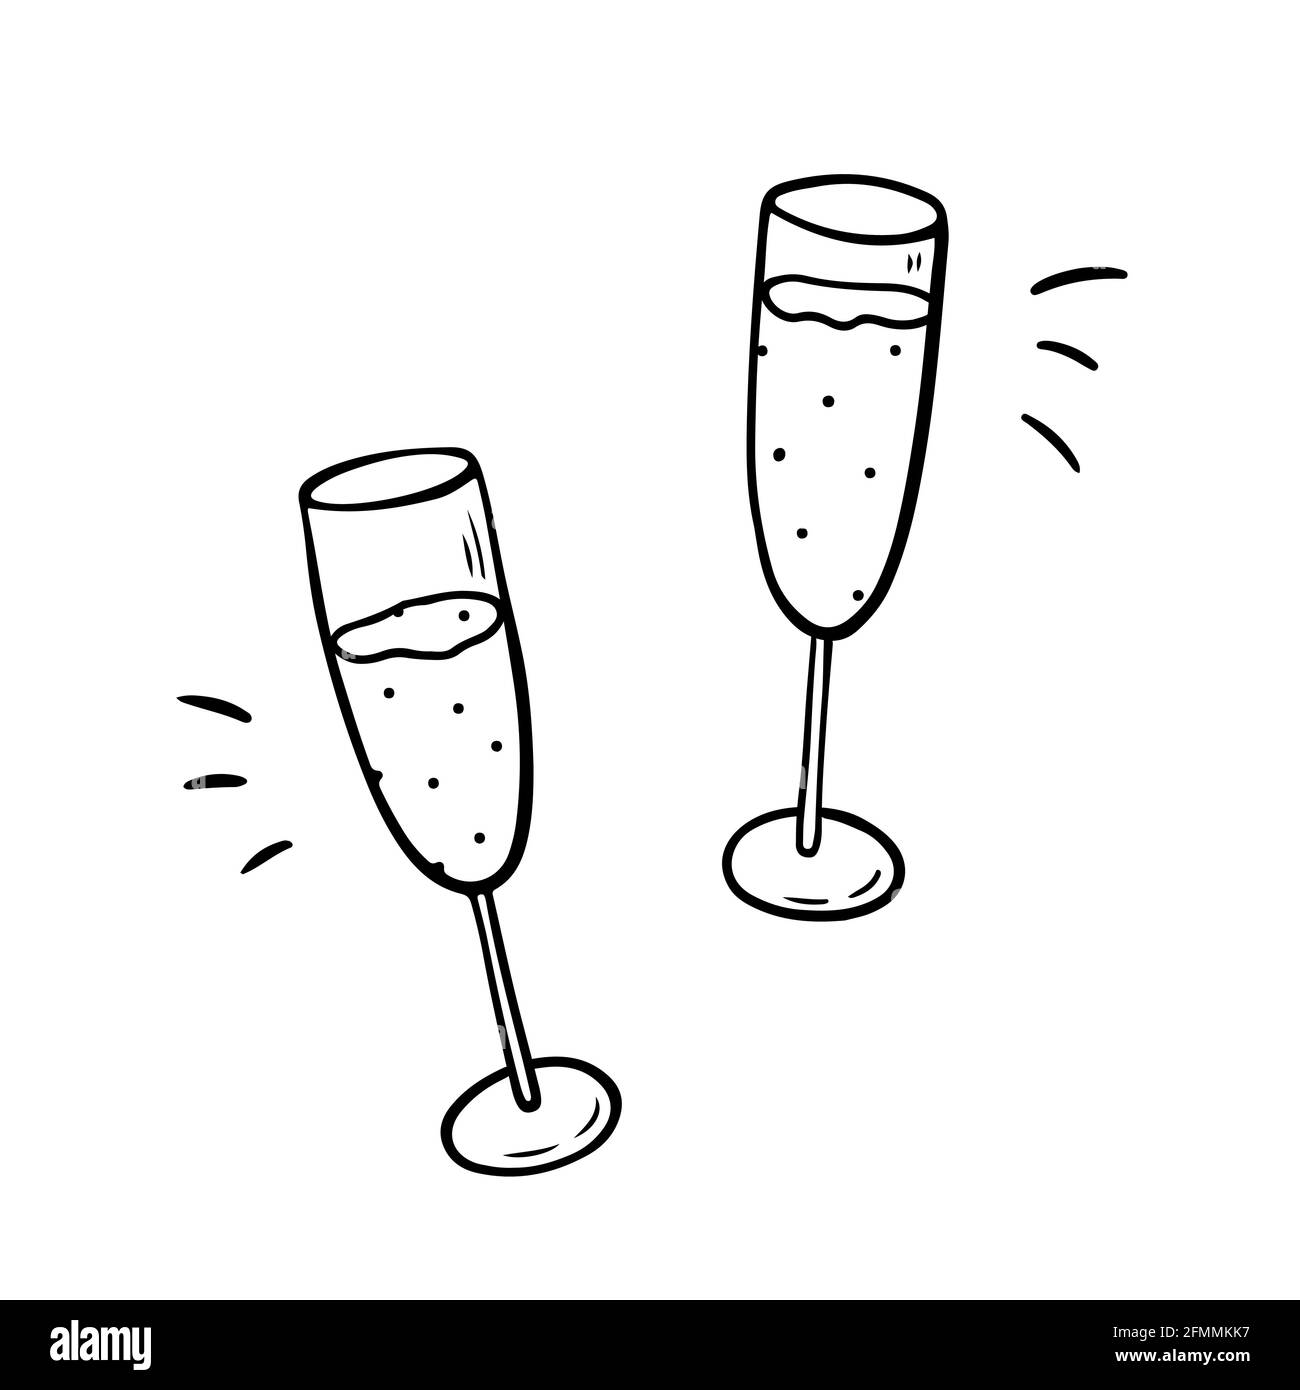 Zwei klirrende Gläser mit Champagner isoliert auf weißem Hintergrund. Prost, Urlaub Toast. Vektor-handgezeichnete Illustration im Doodle-Stil. Geeignet für Karten, Dekorationen, Einladungen, festliche Designs. Stock Vektor